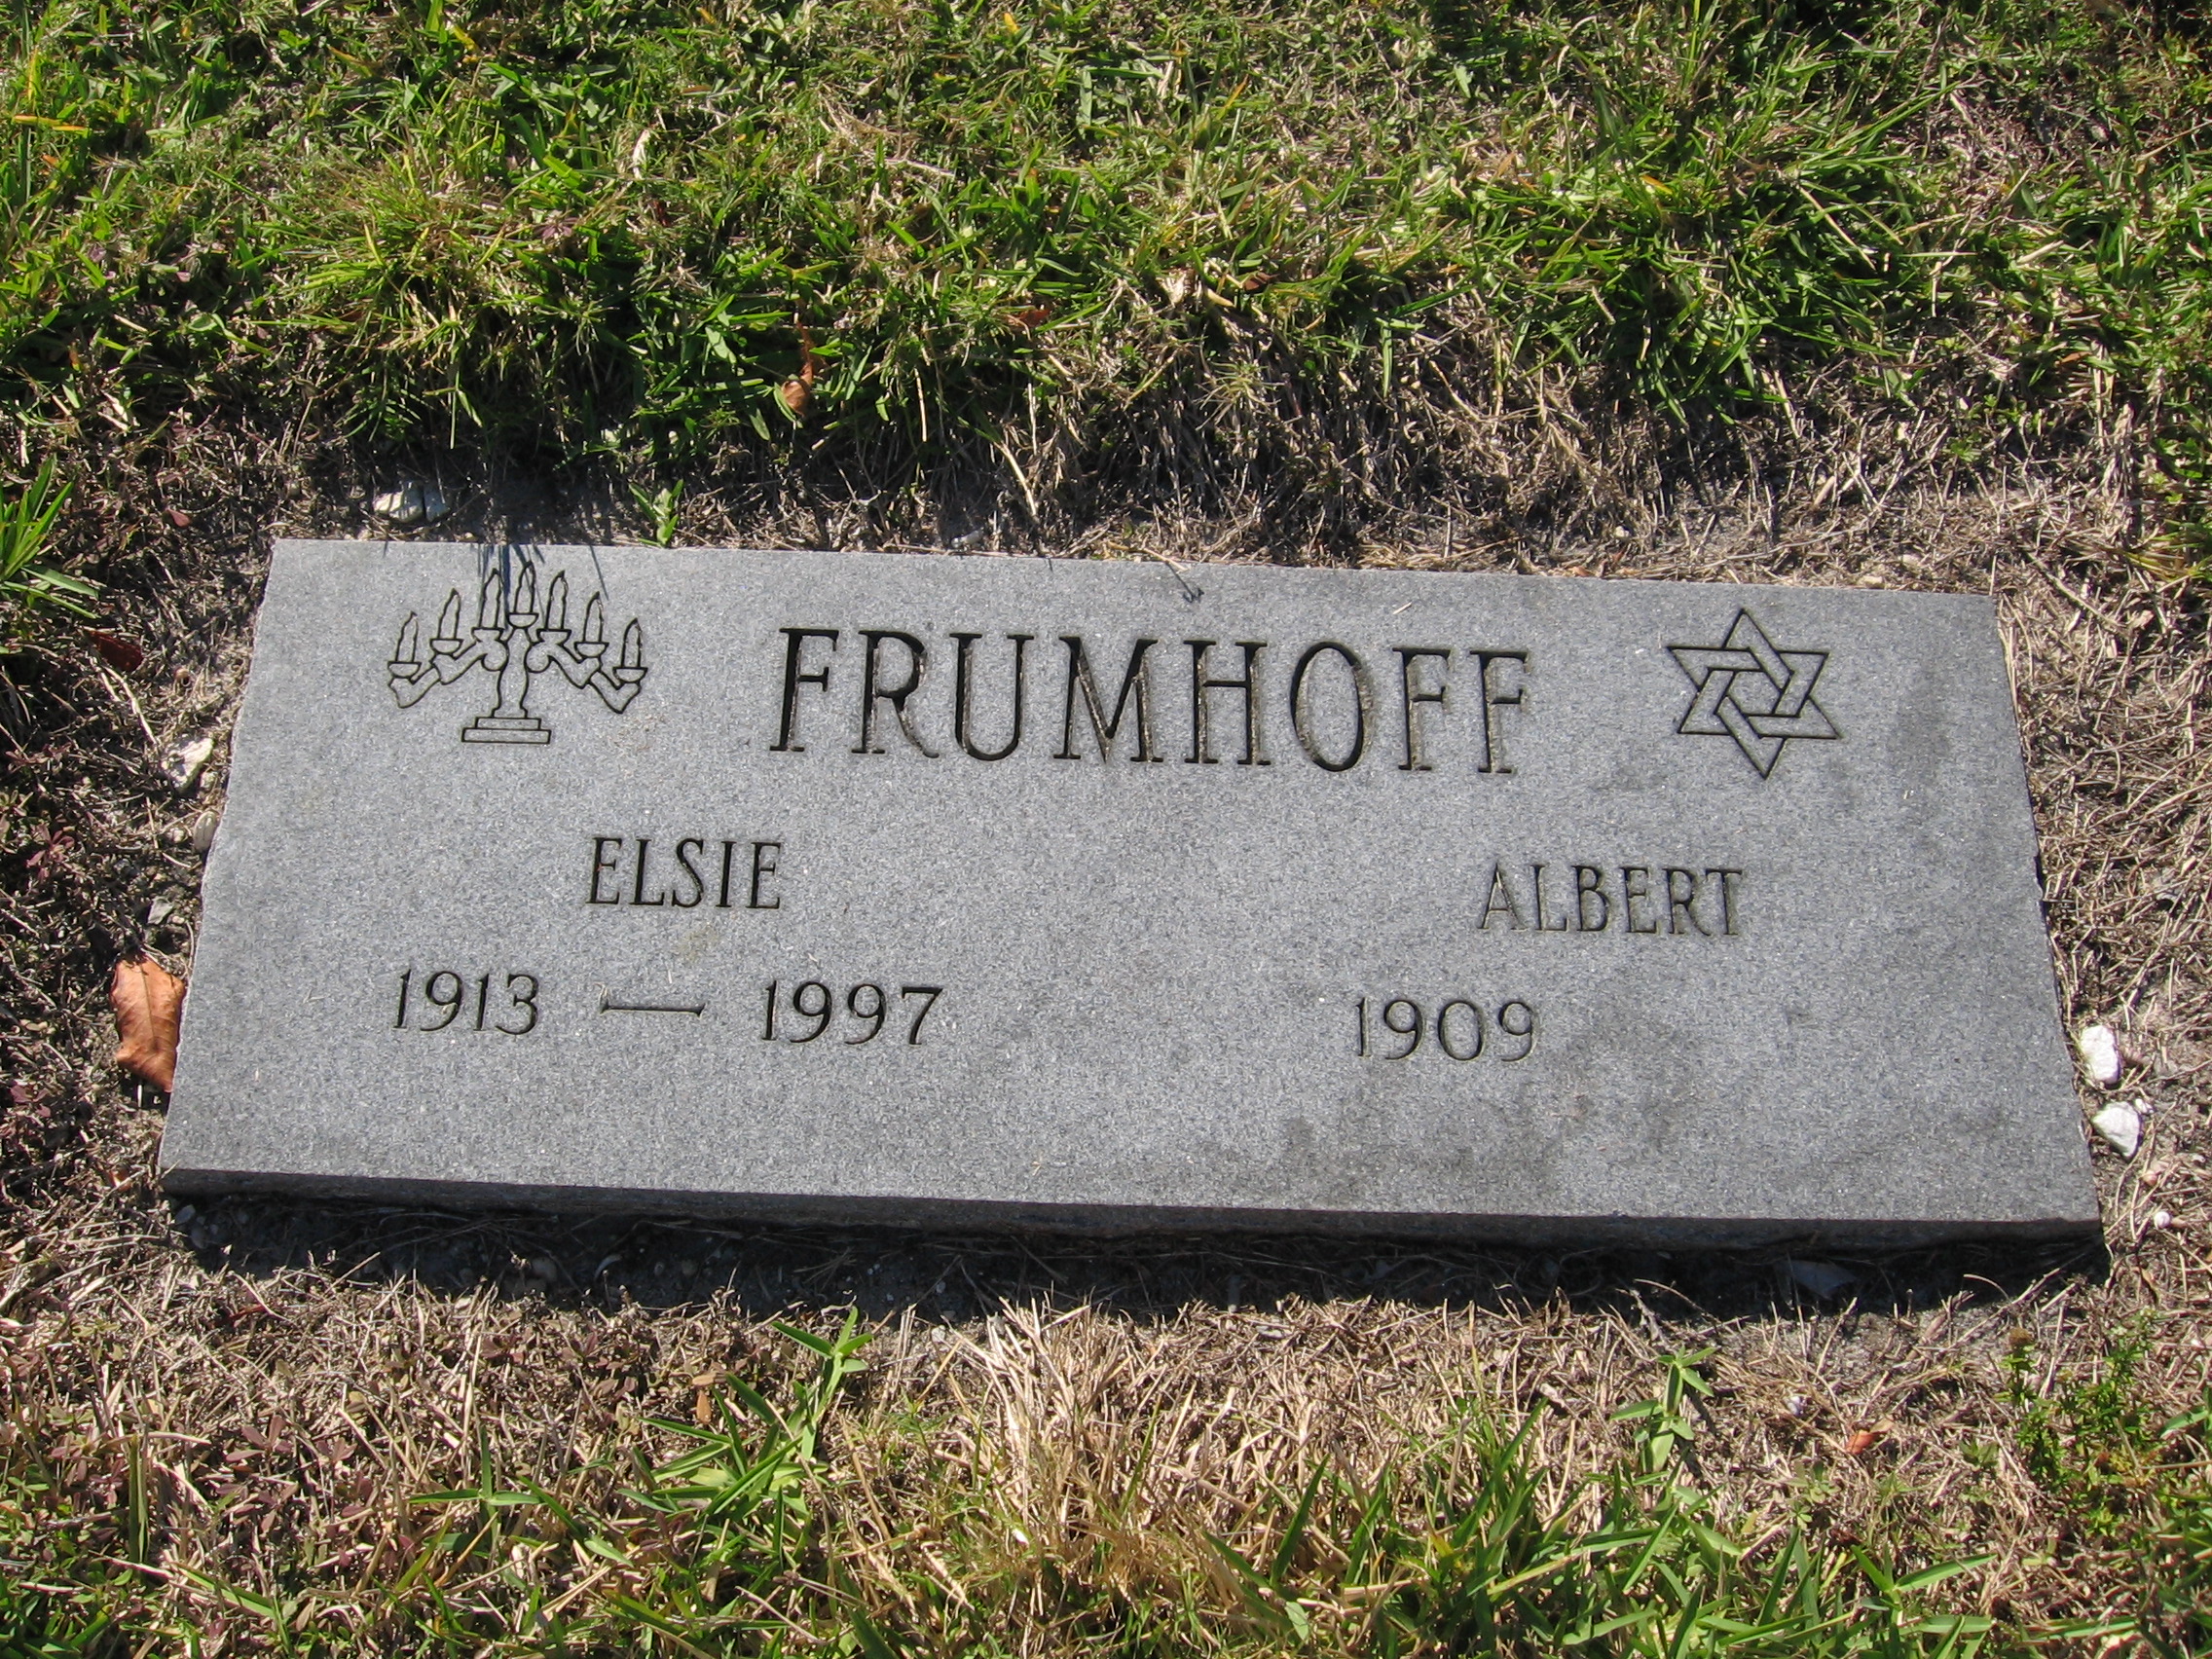 Elsie Frumhoff